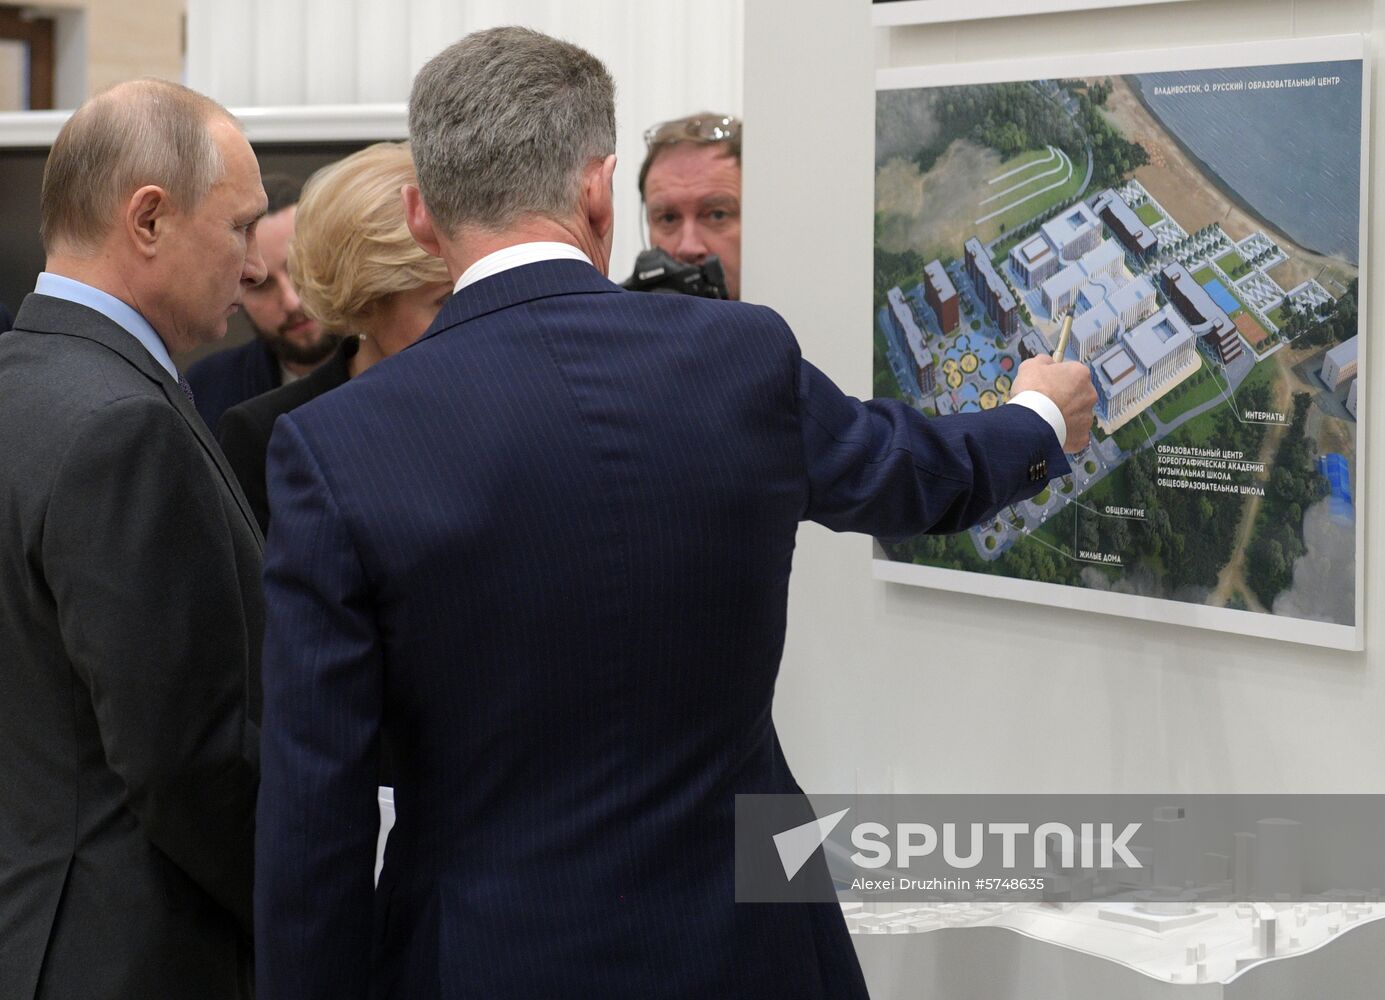 President Vladimir Putin's working visit to Kaliningrad